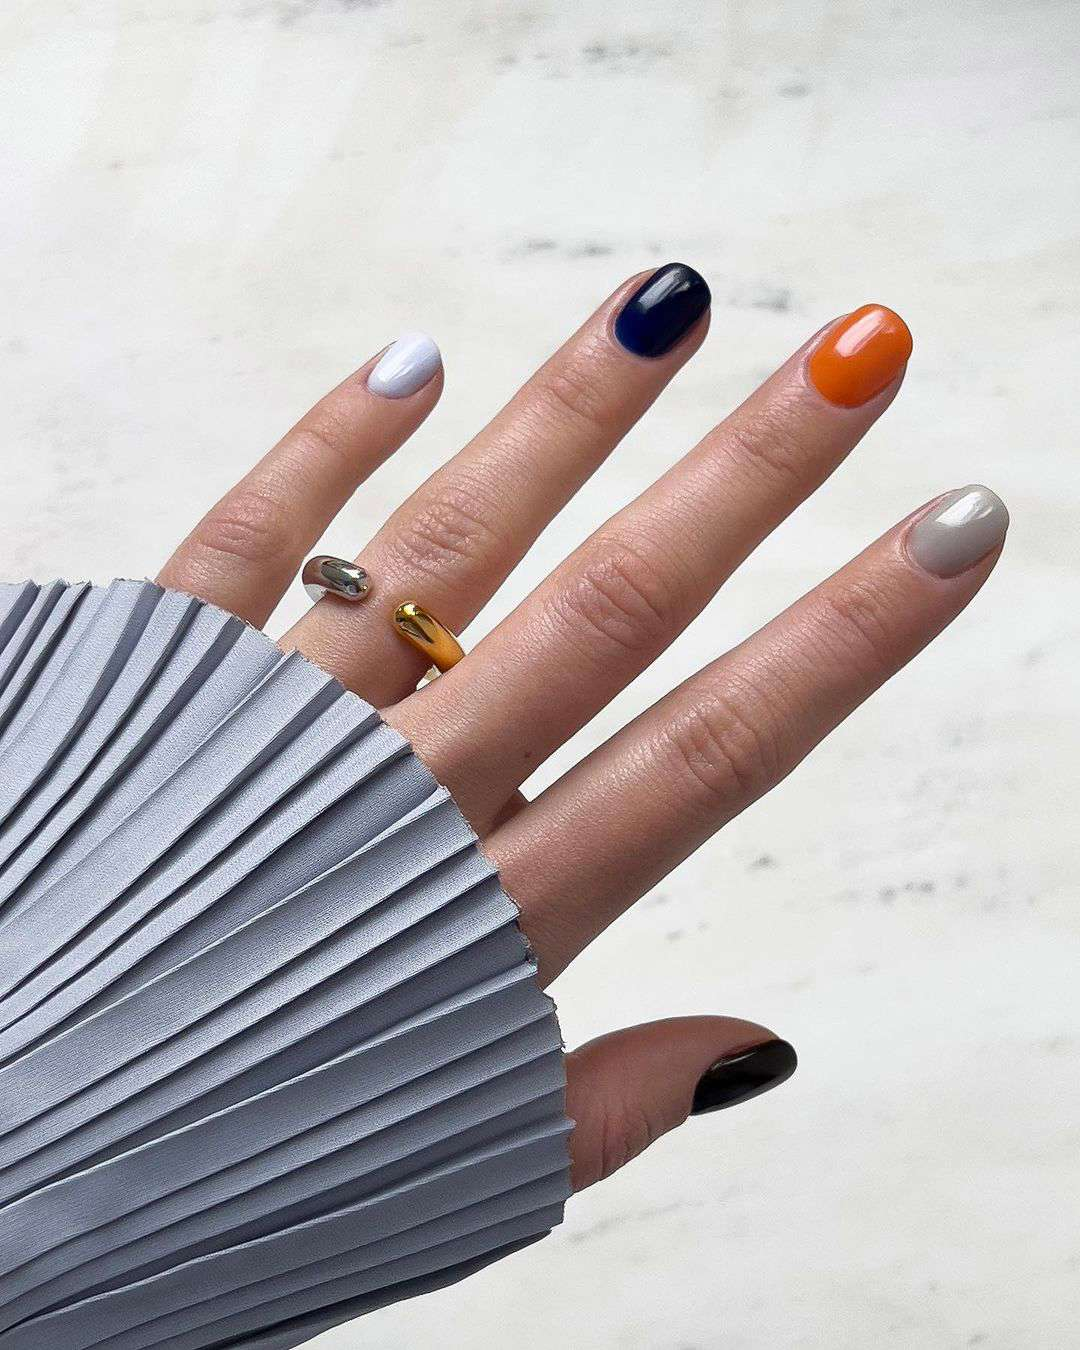 15 uñas permanentes bonitas para inspirarte: una de cada color